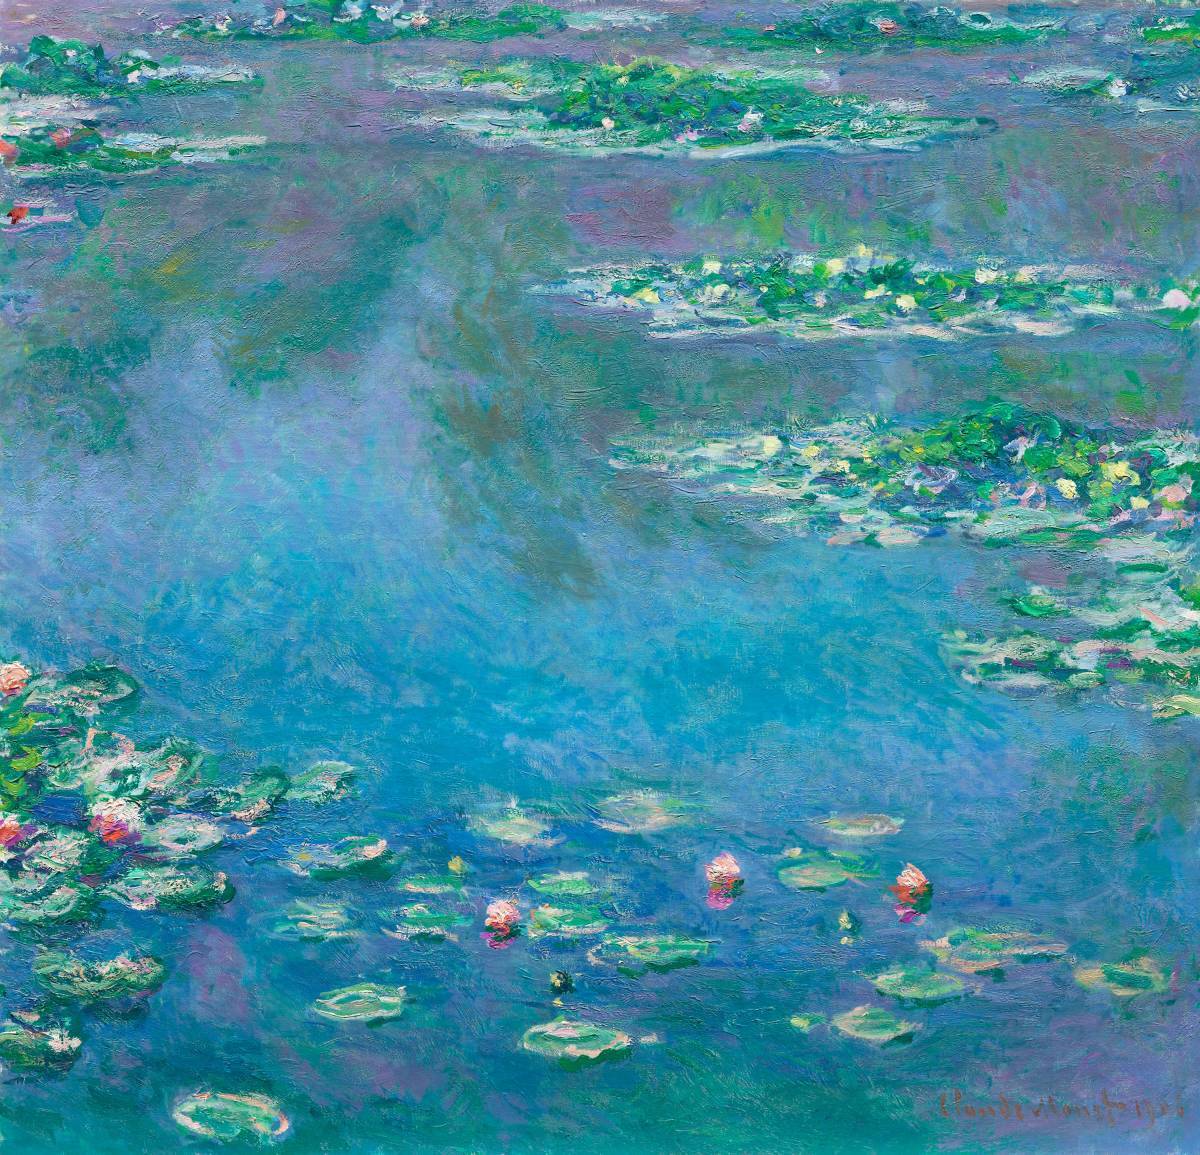 Nueva impresión de alta calidad de los Nenúfares de Monet Tamaño grande A3 Sin marco Precio especial 1800 yenes (envío incluido) Cómpralo ahora, Obra de arte, Cuadro, otros